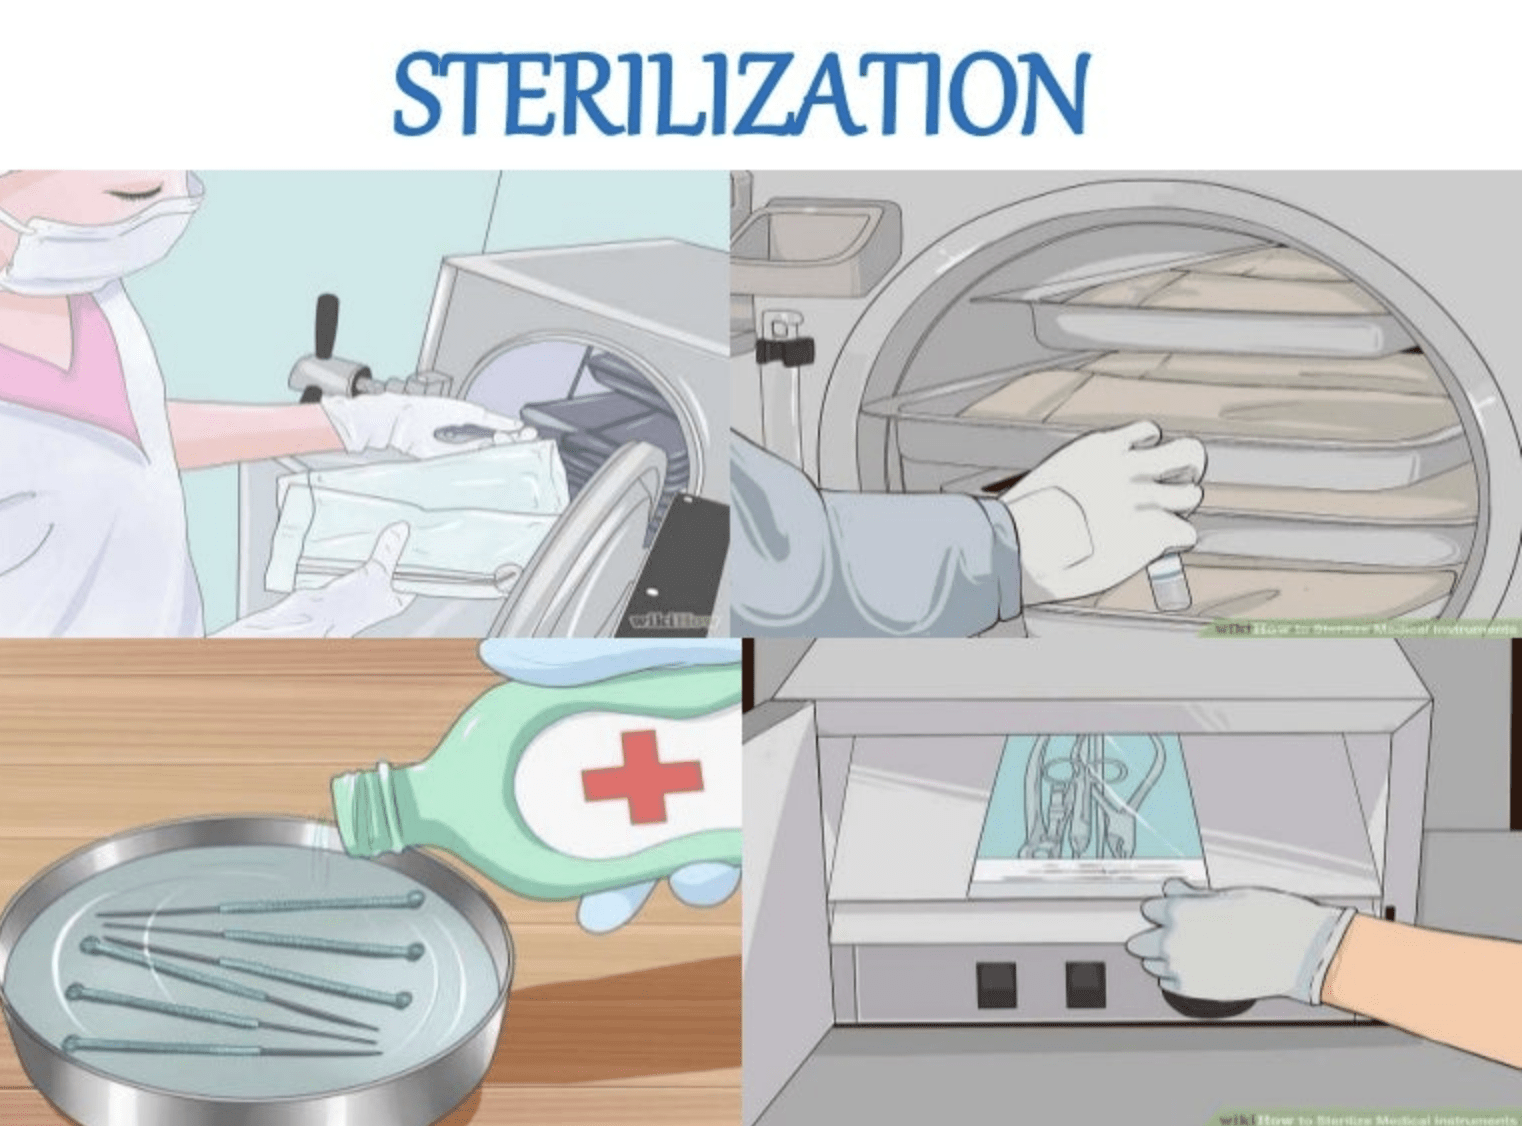 Sterilization graphics collage